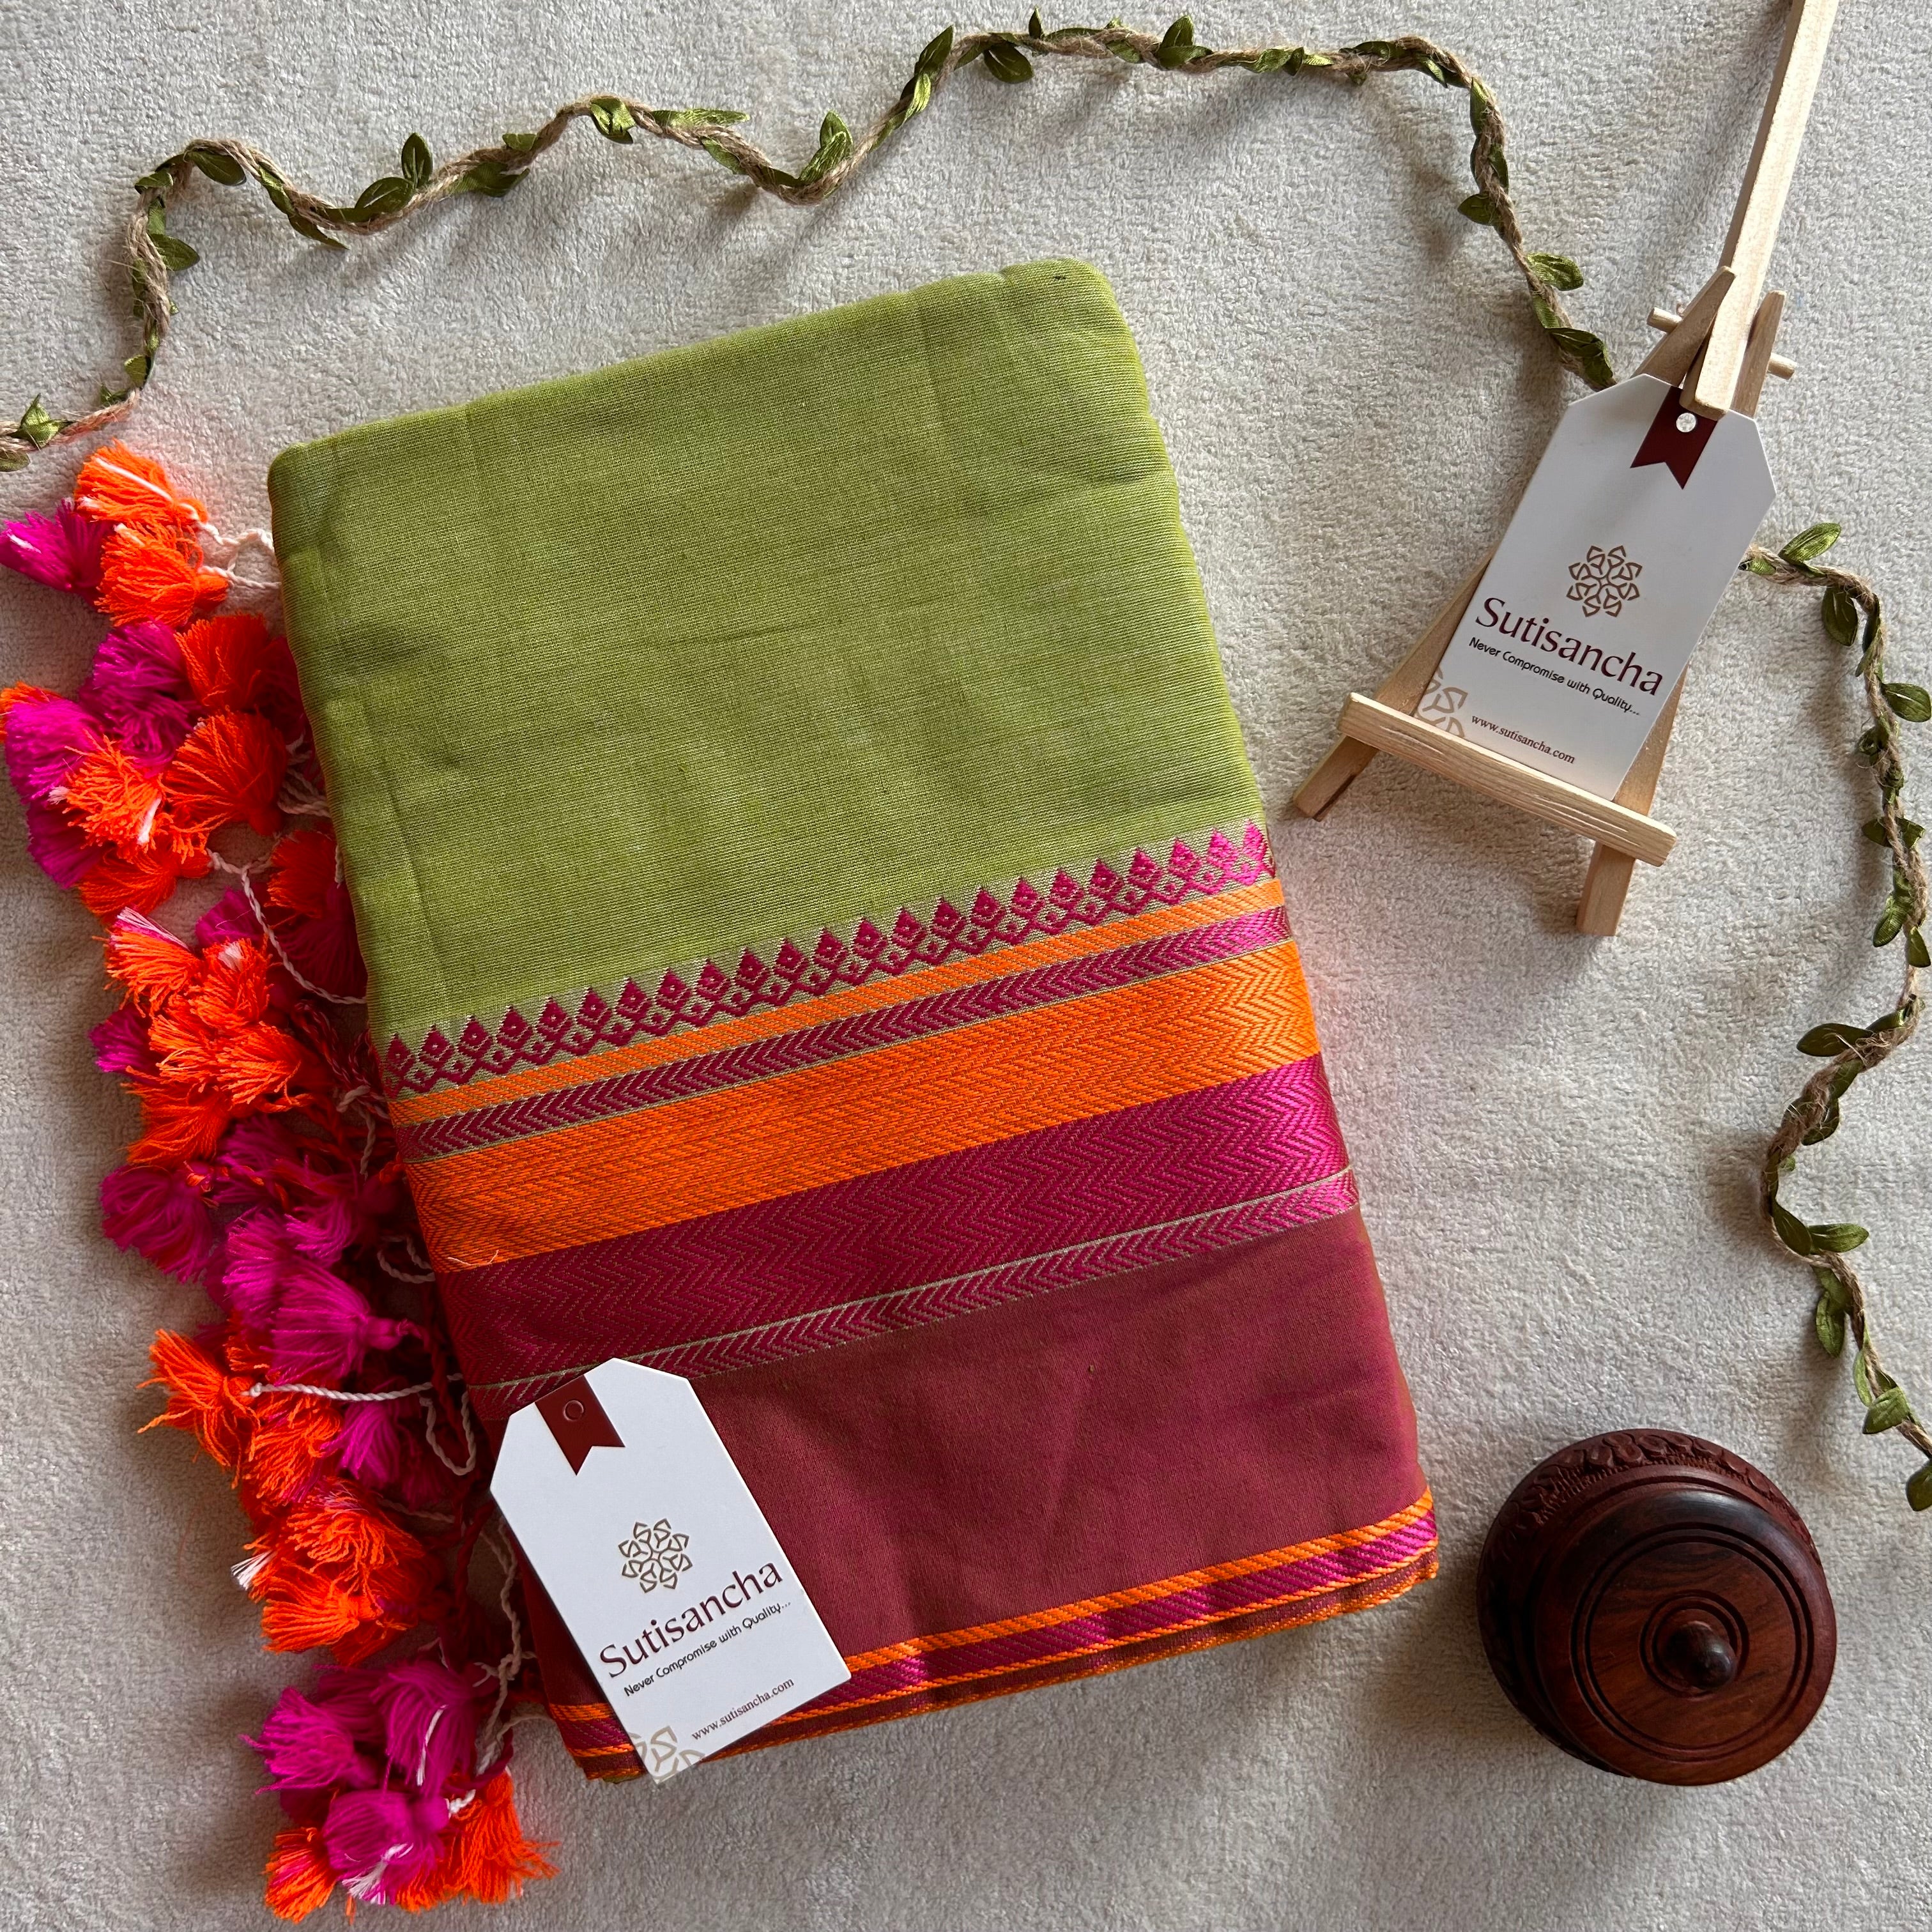 Sutisancha Handwoven Bliss Bengal Cotton Saree